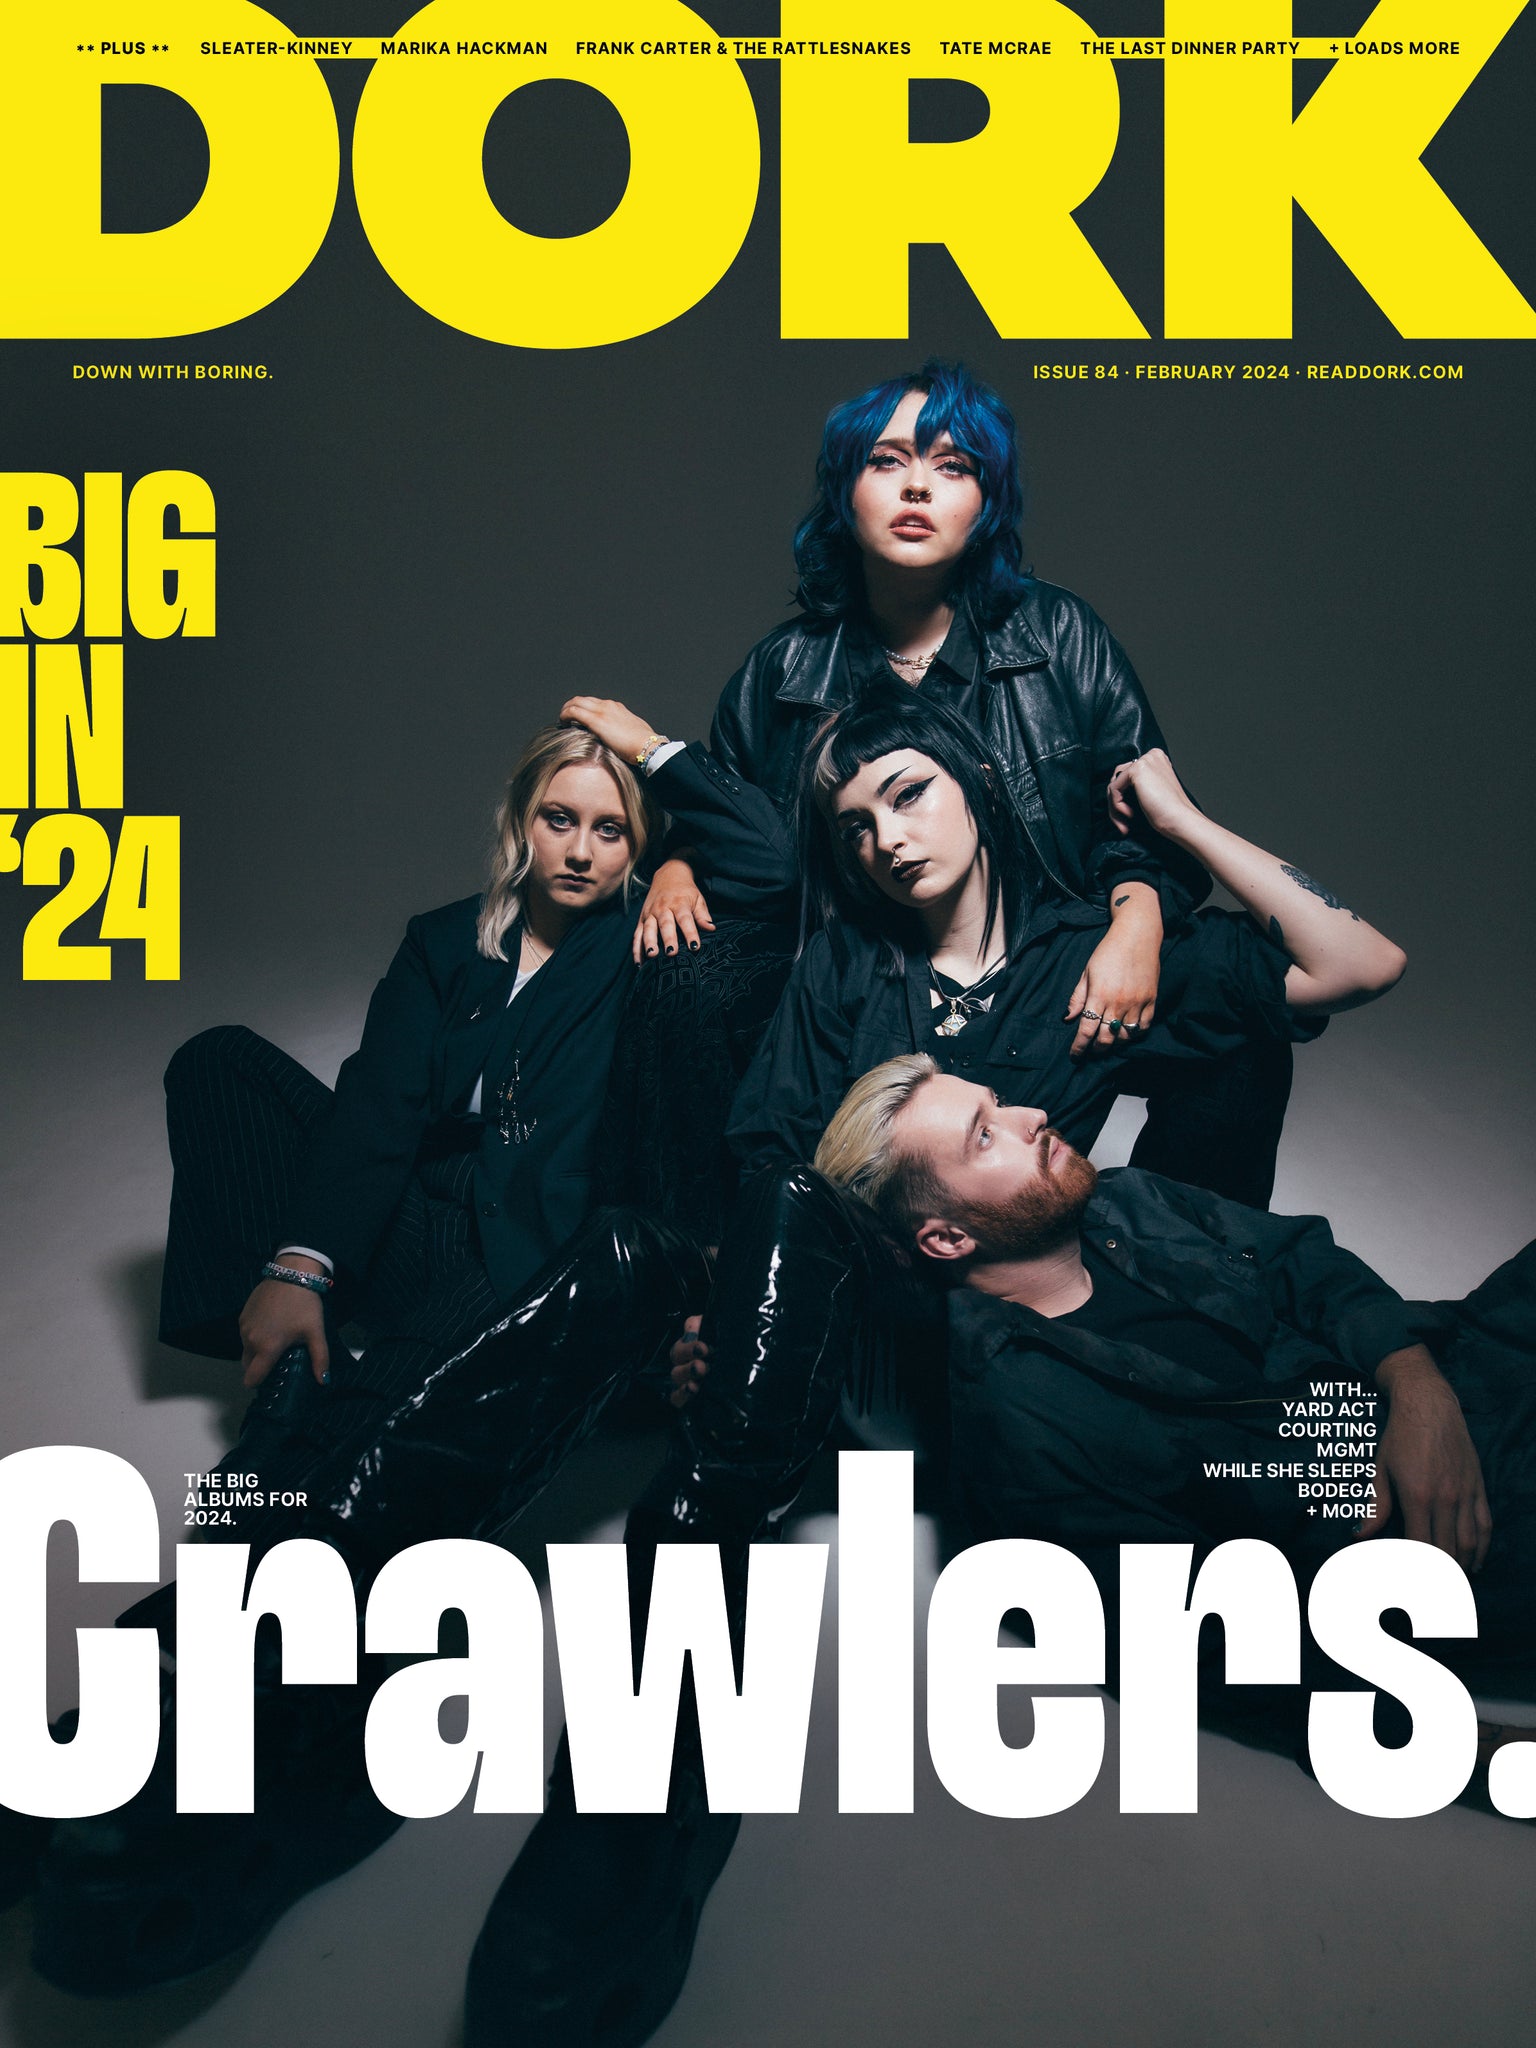 Dork, February 2024 (Crawlers cover)